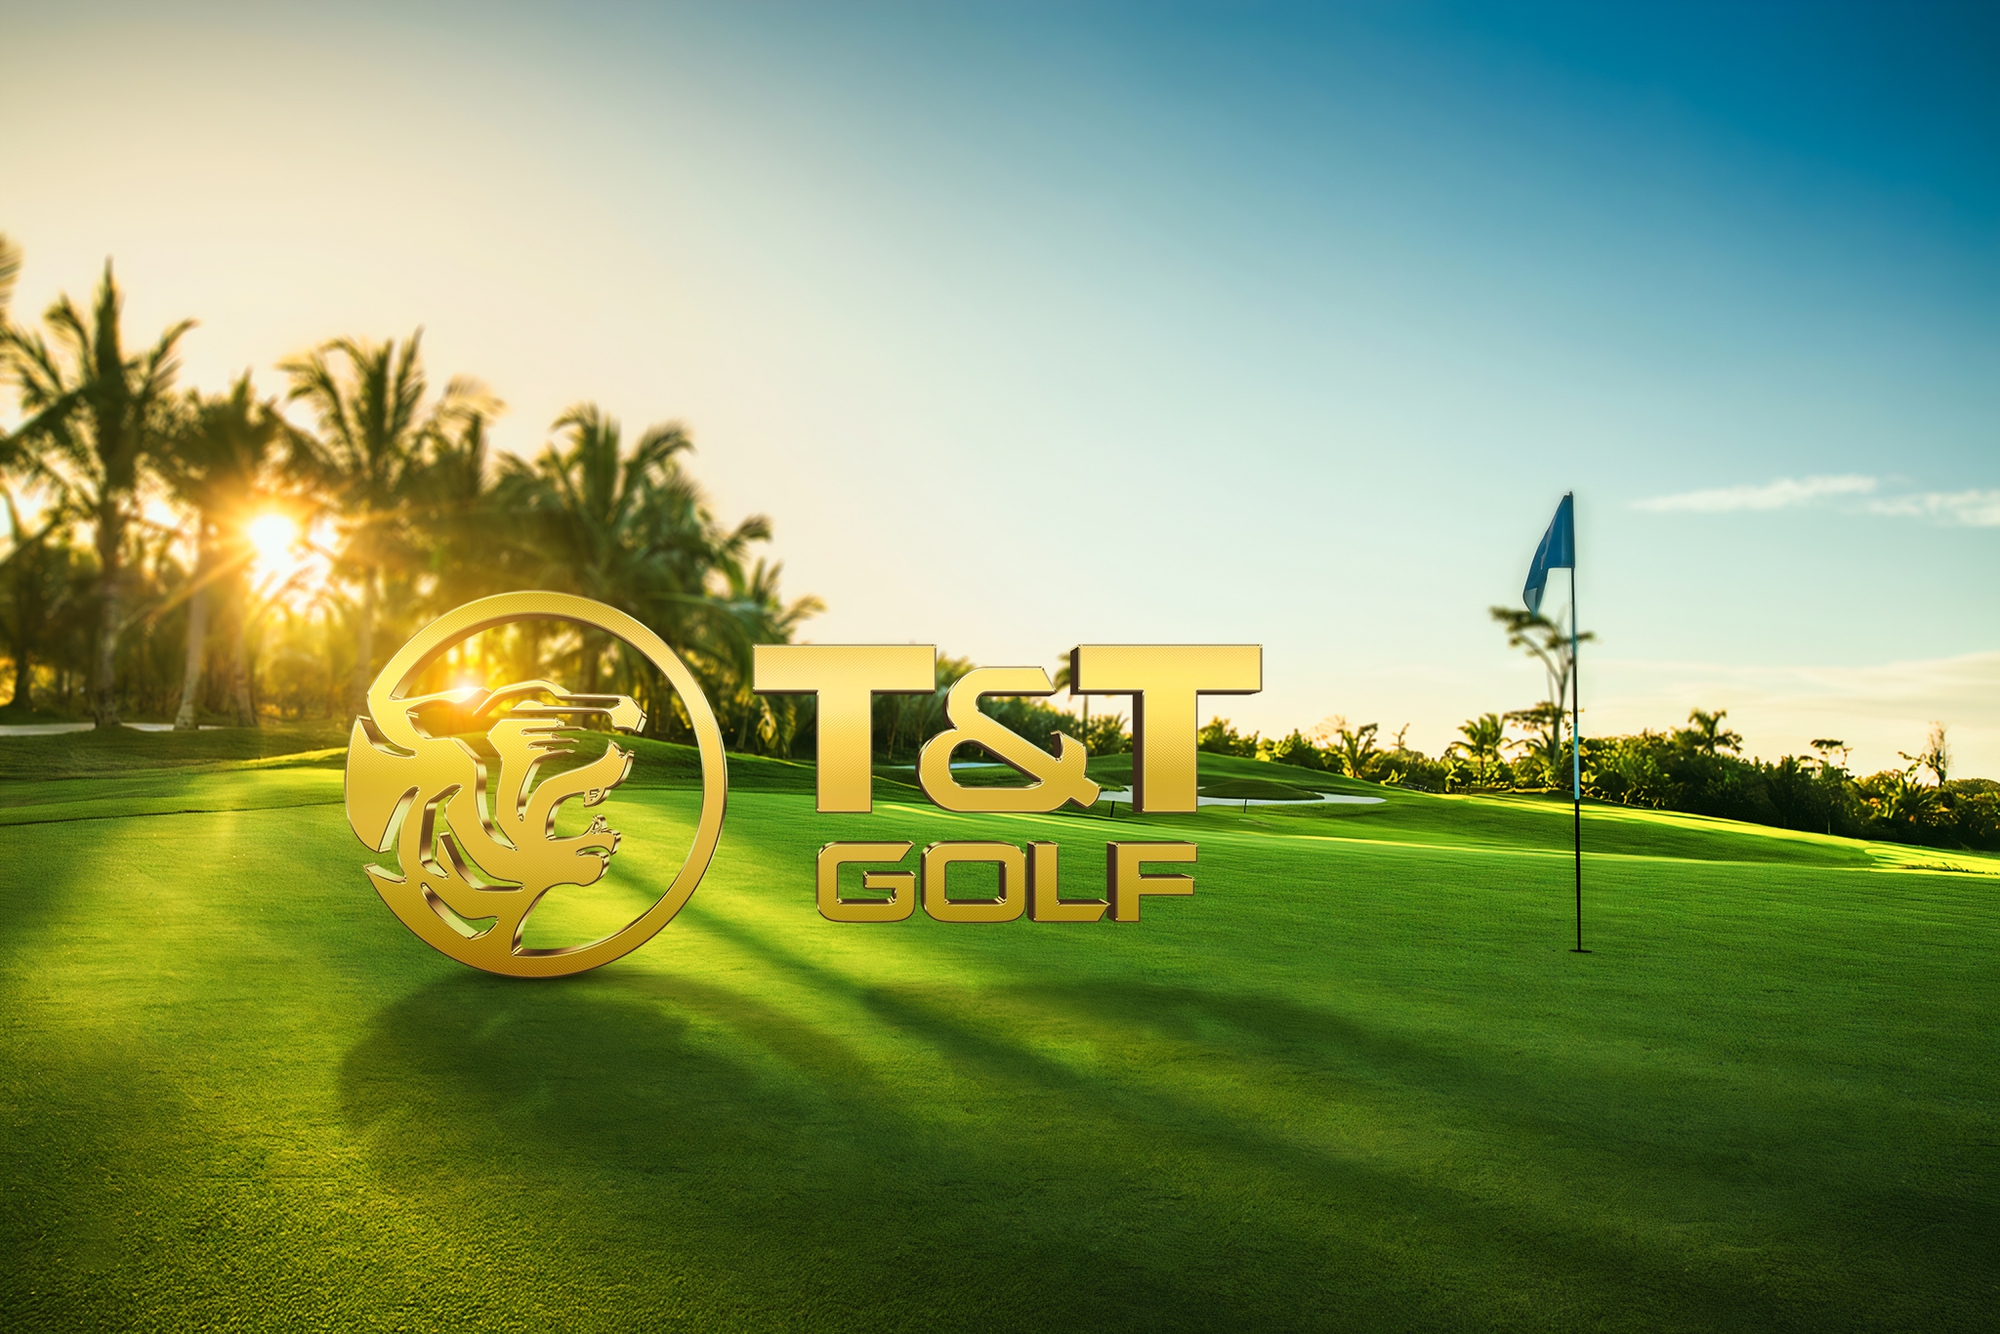  T&T Group ra mắt thương hiệu T&T Golf với dự án đầu tiên tại Phú Thọ - Ảnh 1.